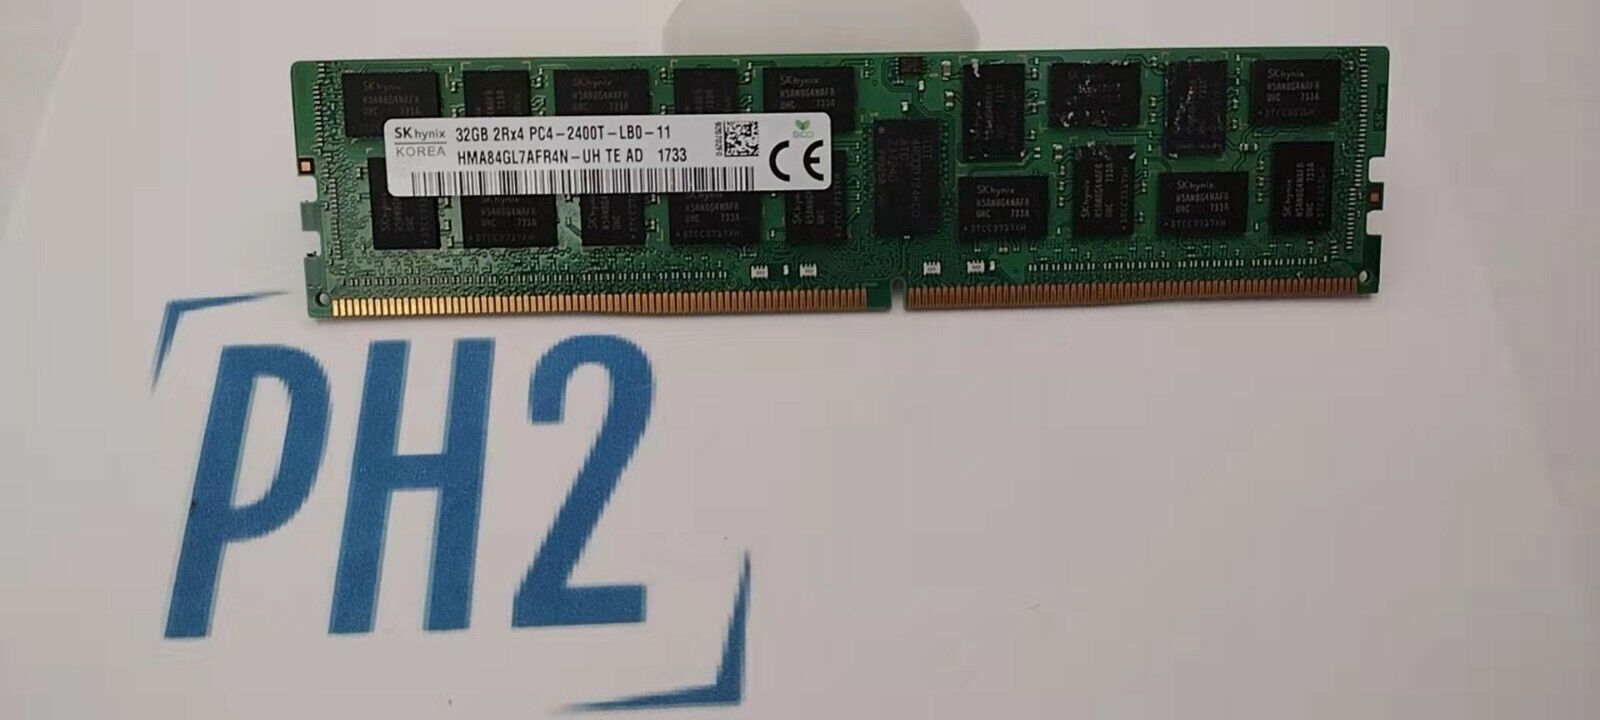 HYNIX HMA84GL7AFR4N-UH 32GB (1X32GB) 2RX4 PC4-2400T-LB0  MEMORY MODULE